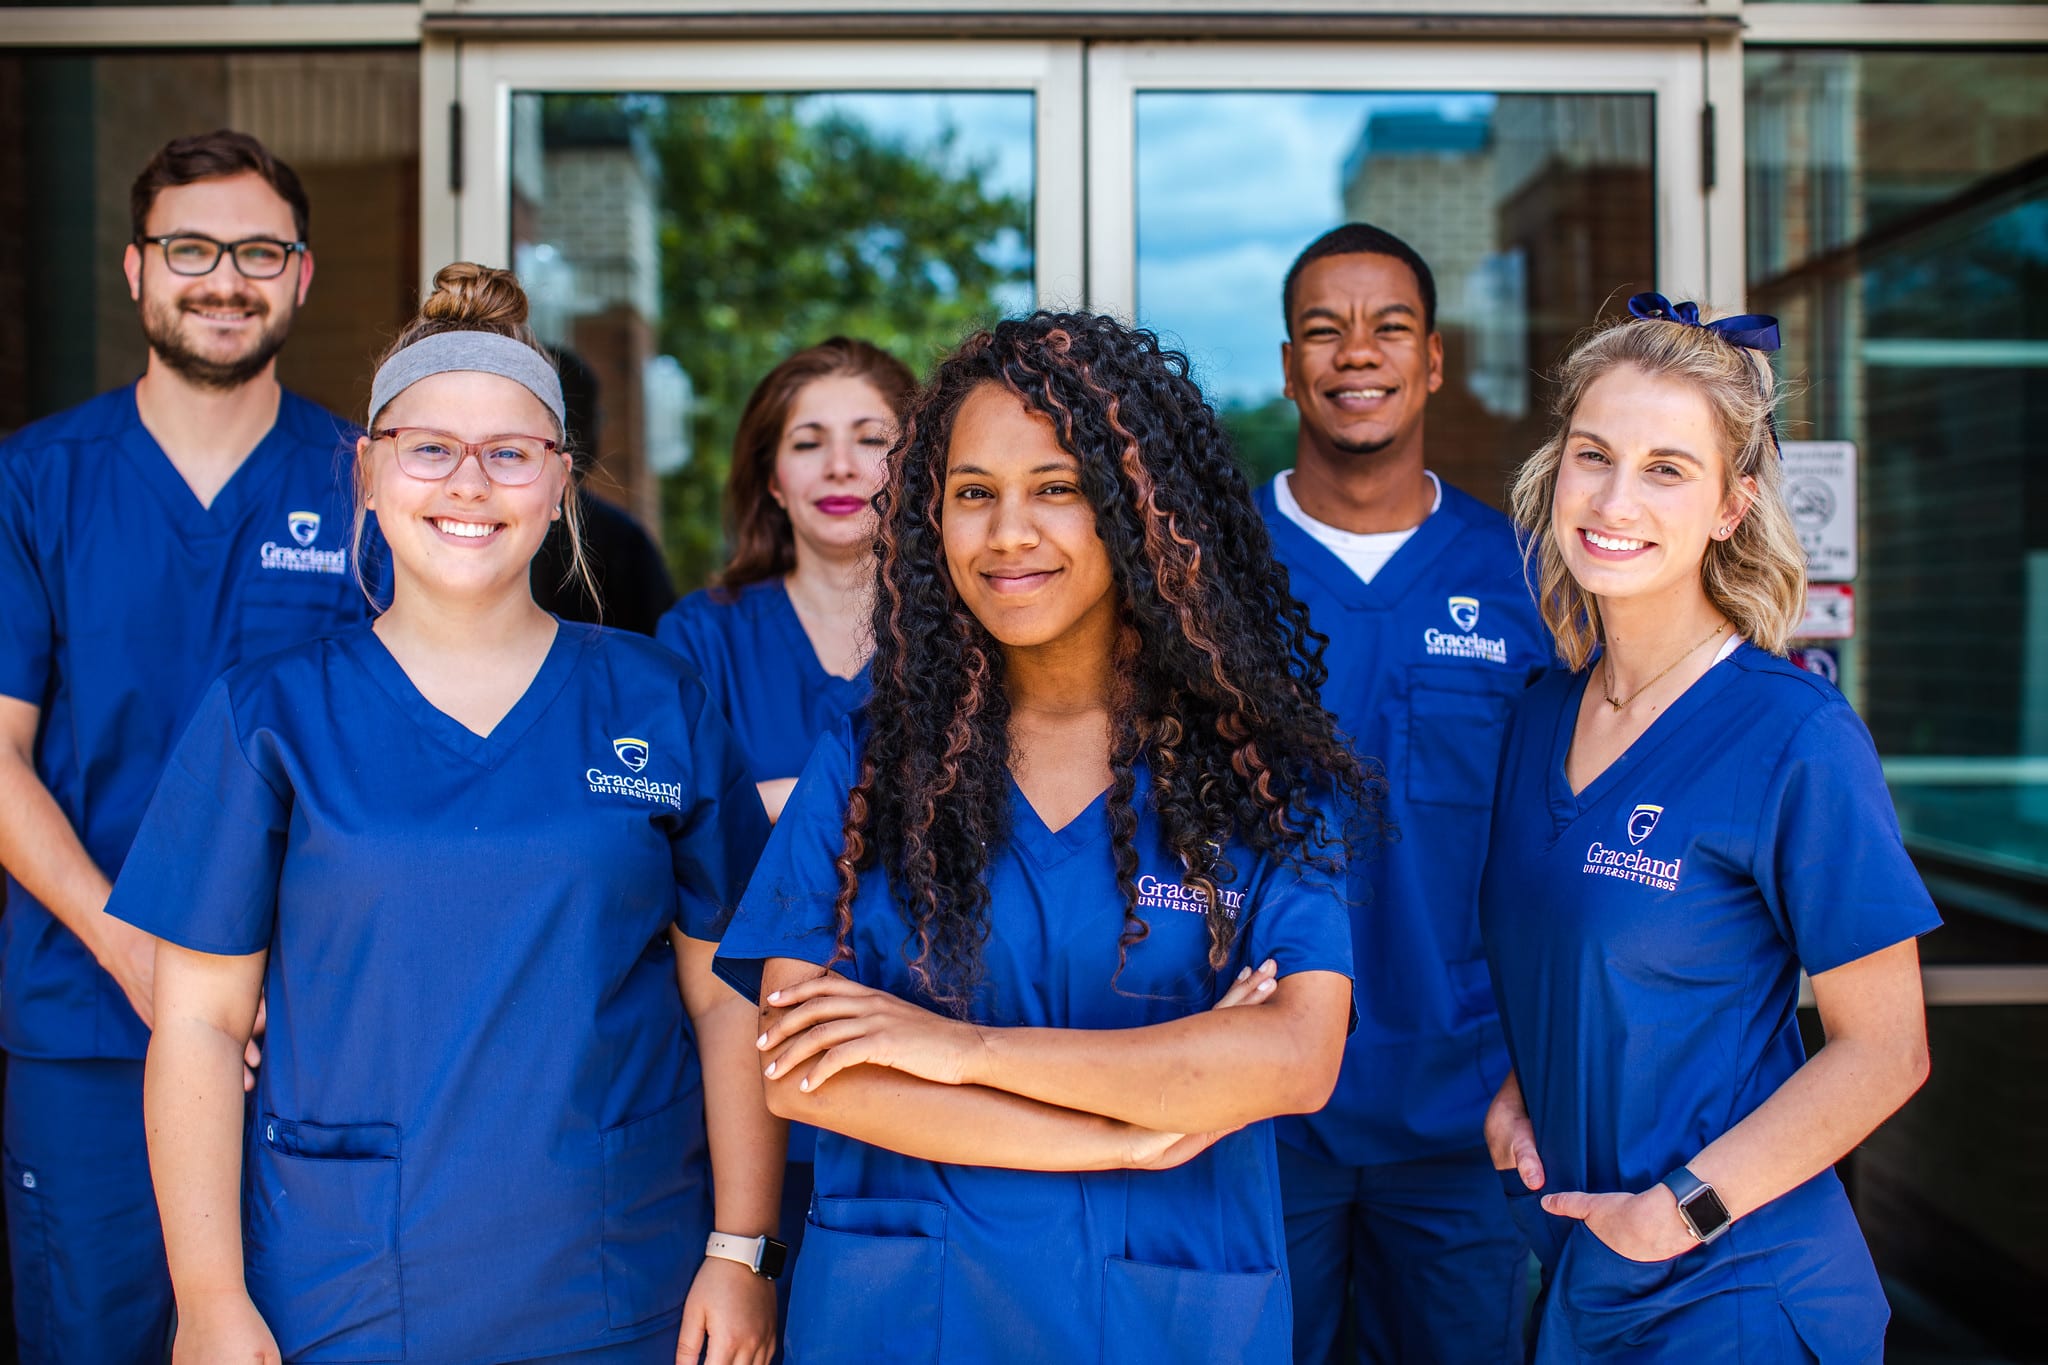 Group of nurses in Graceland nursing scrubs